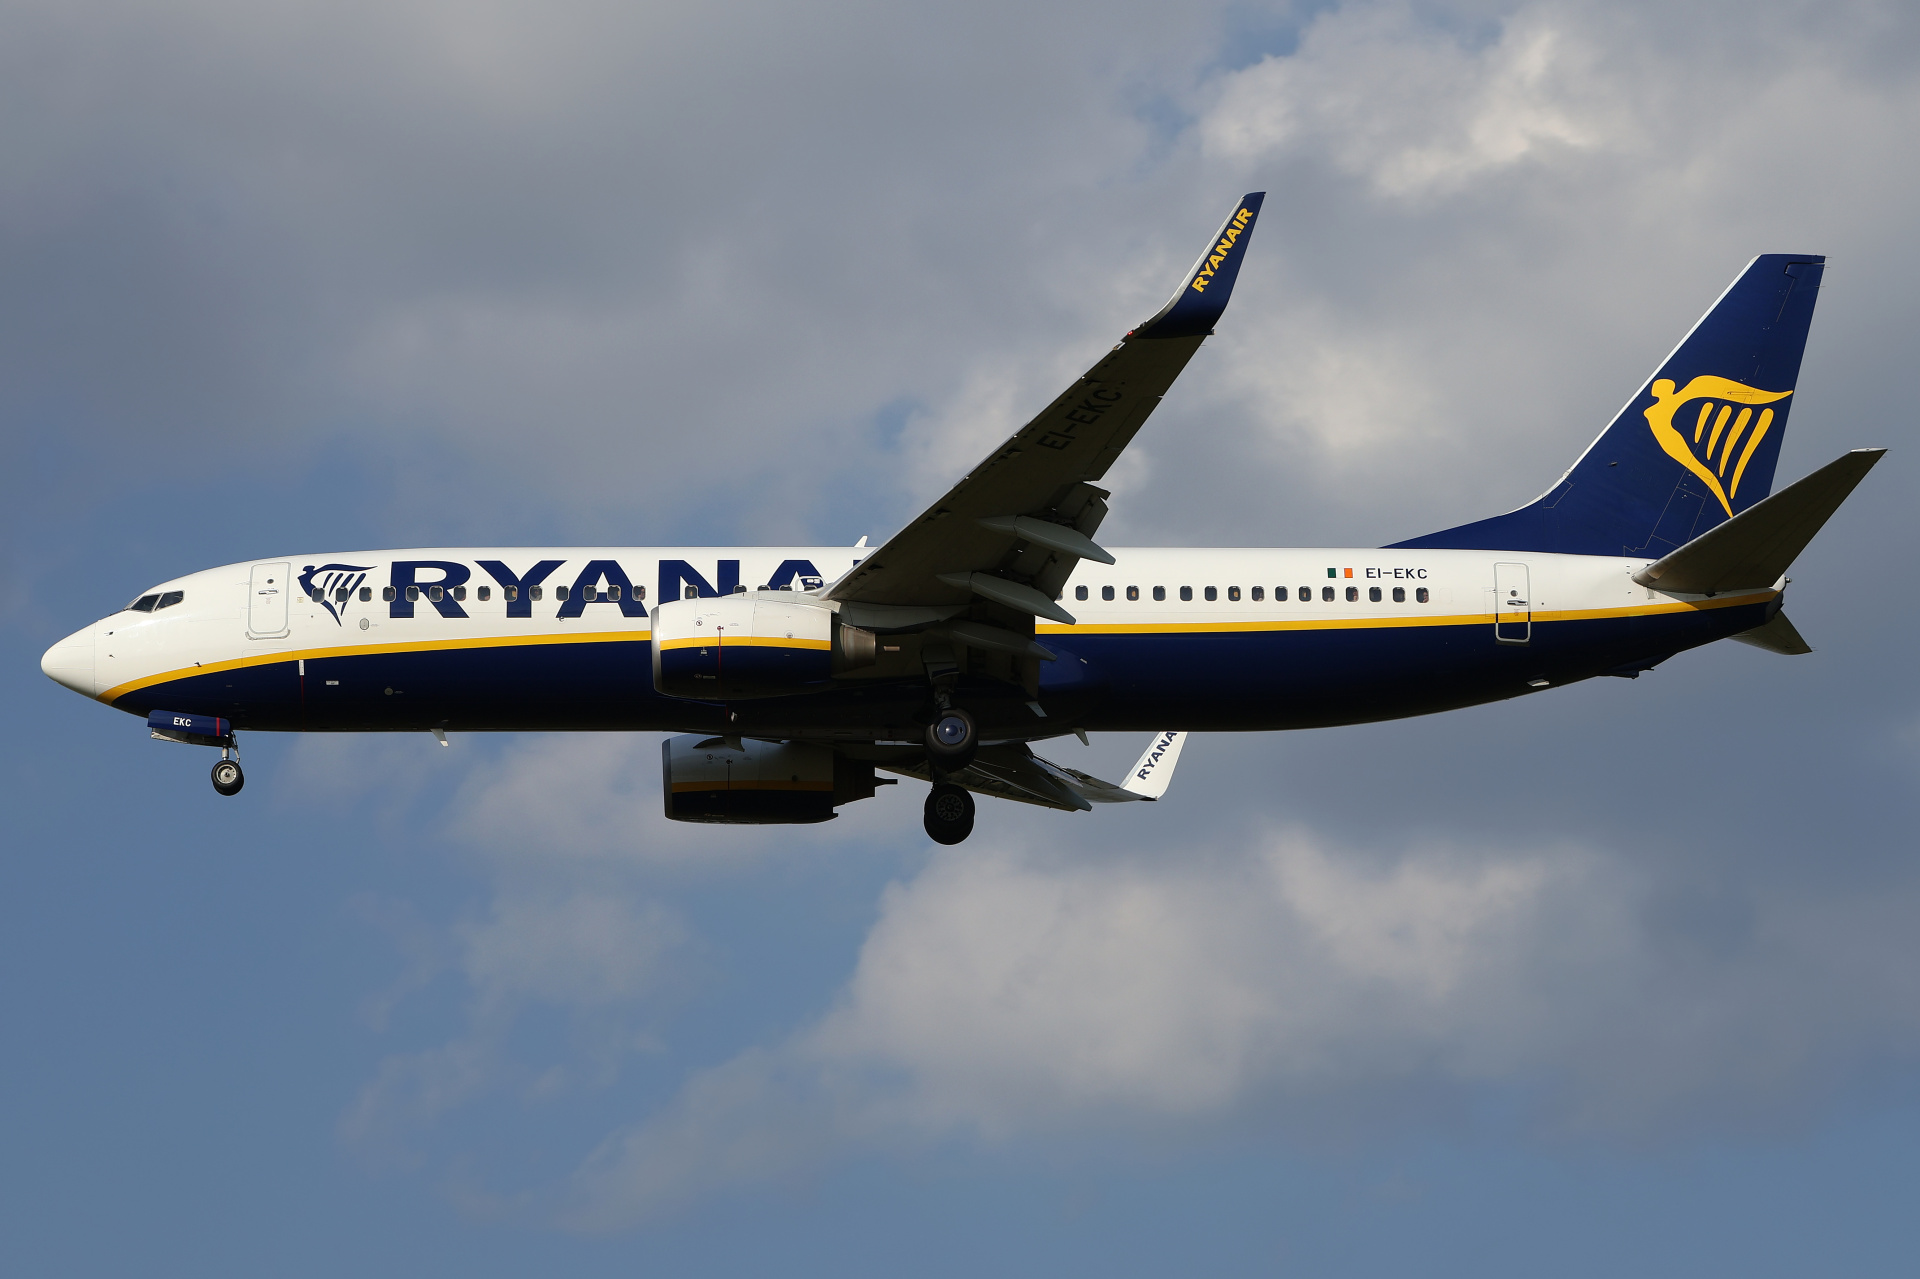 EI-EKC (Aircraft » EPWA Spotting » Boeing 737-800 » Ryanair)